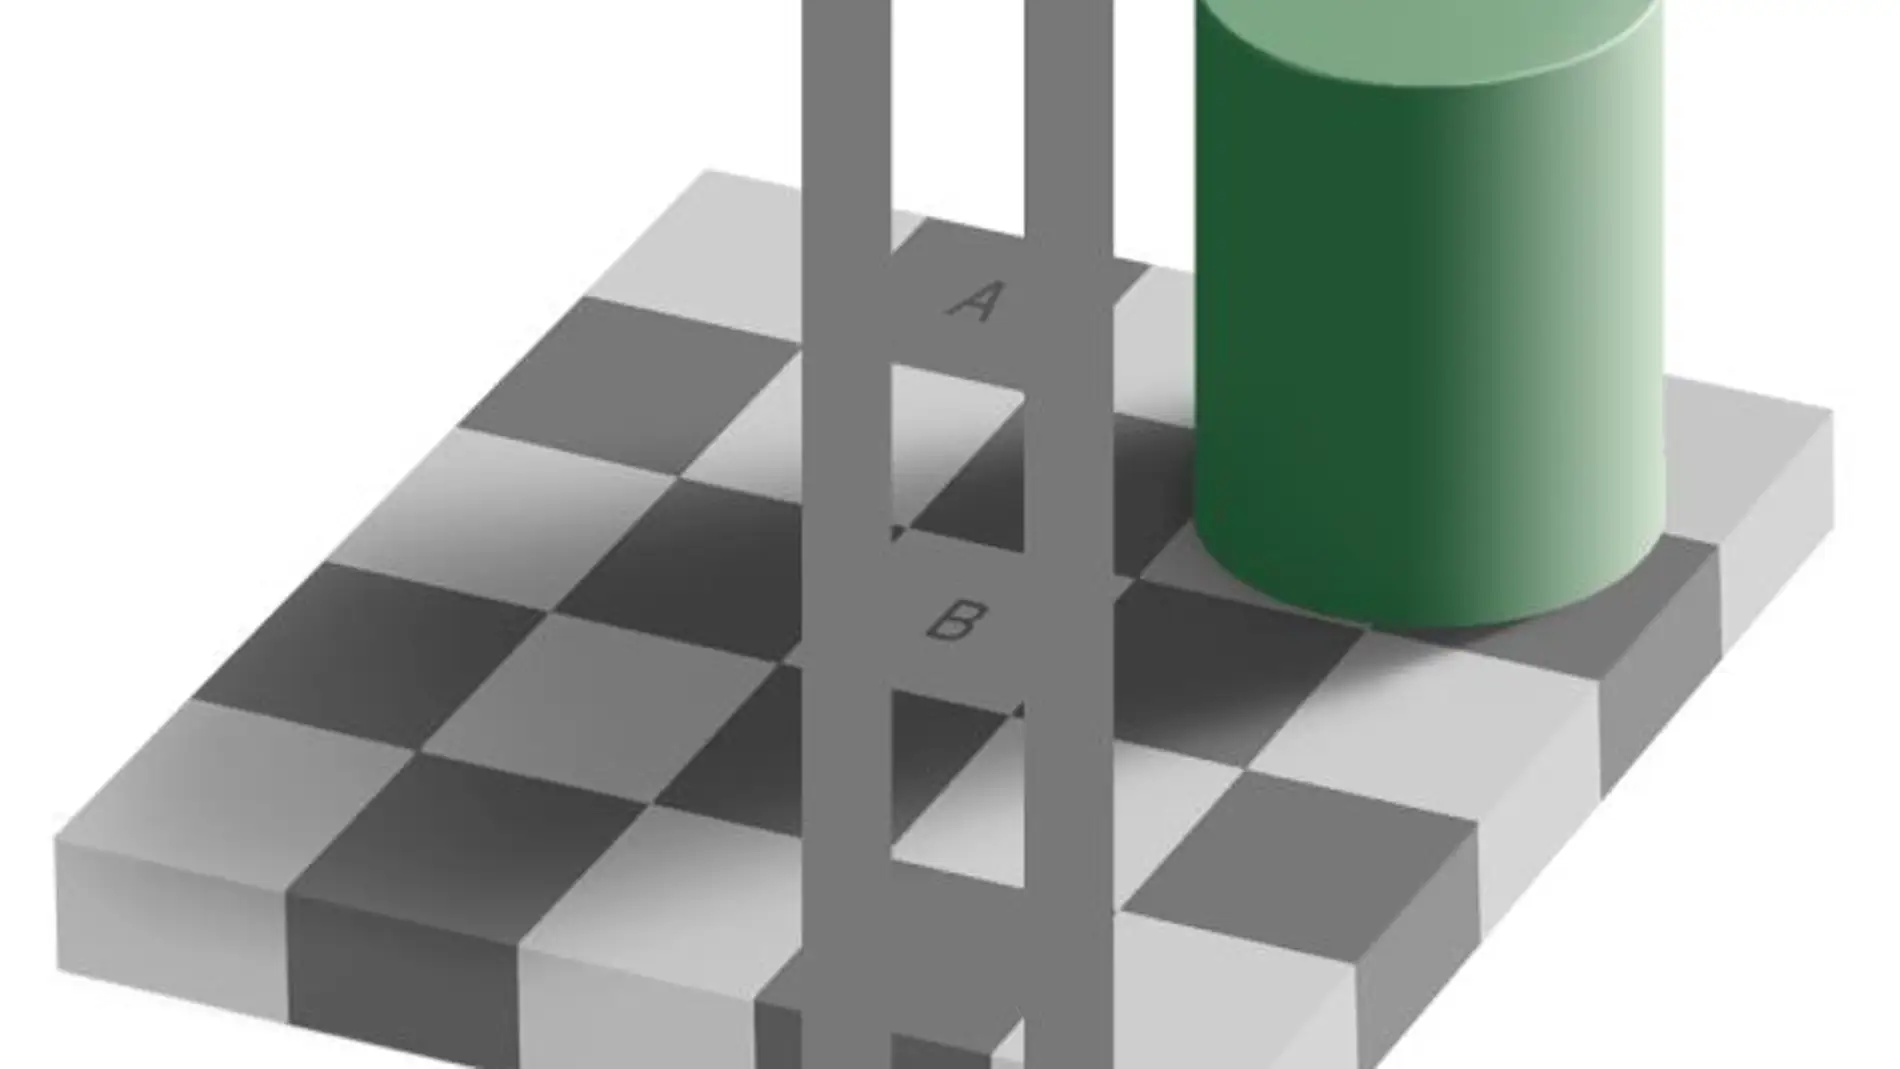 Ilusión óptica del tablero de ajedrez: solución